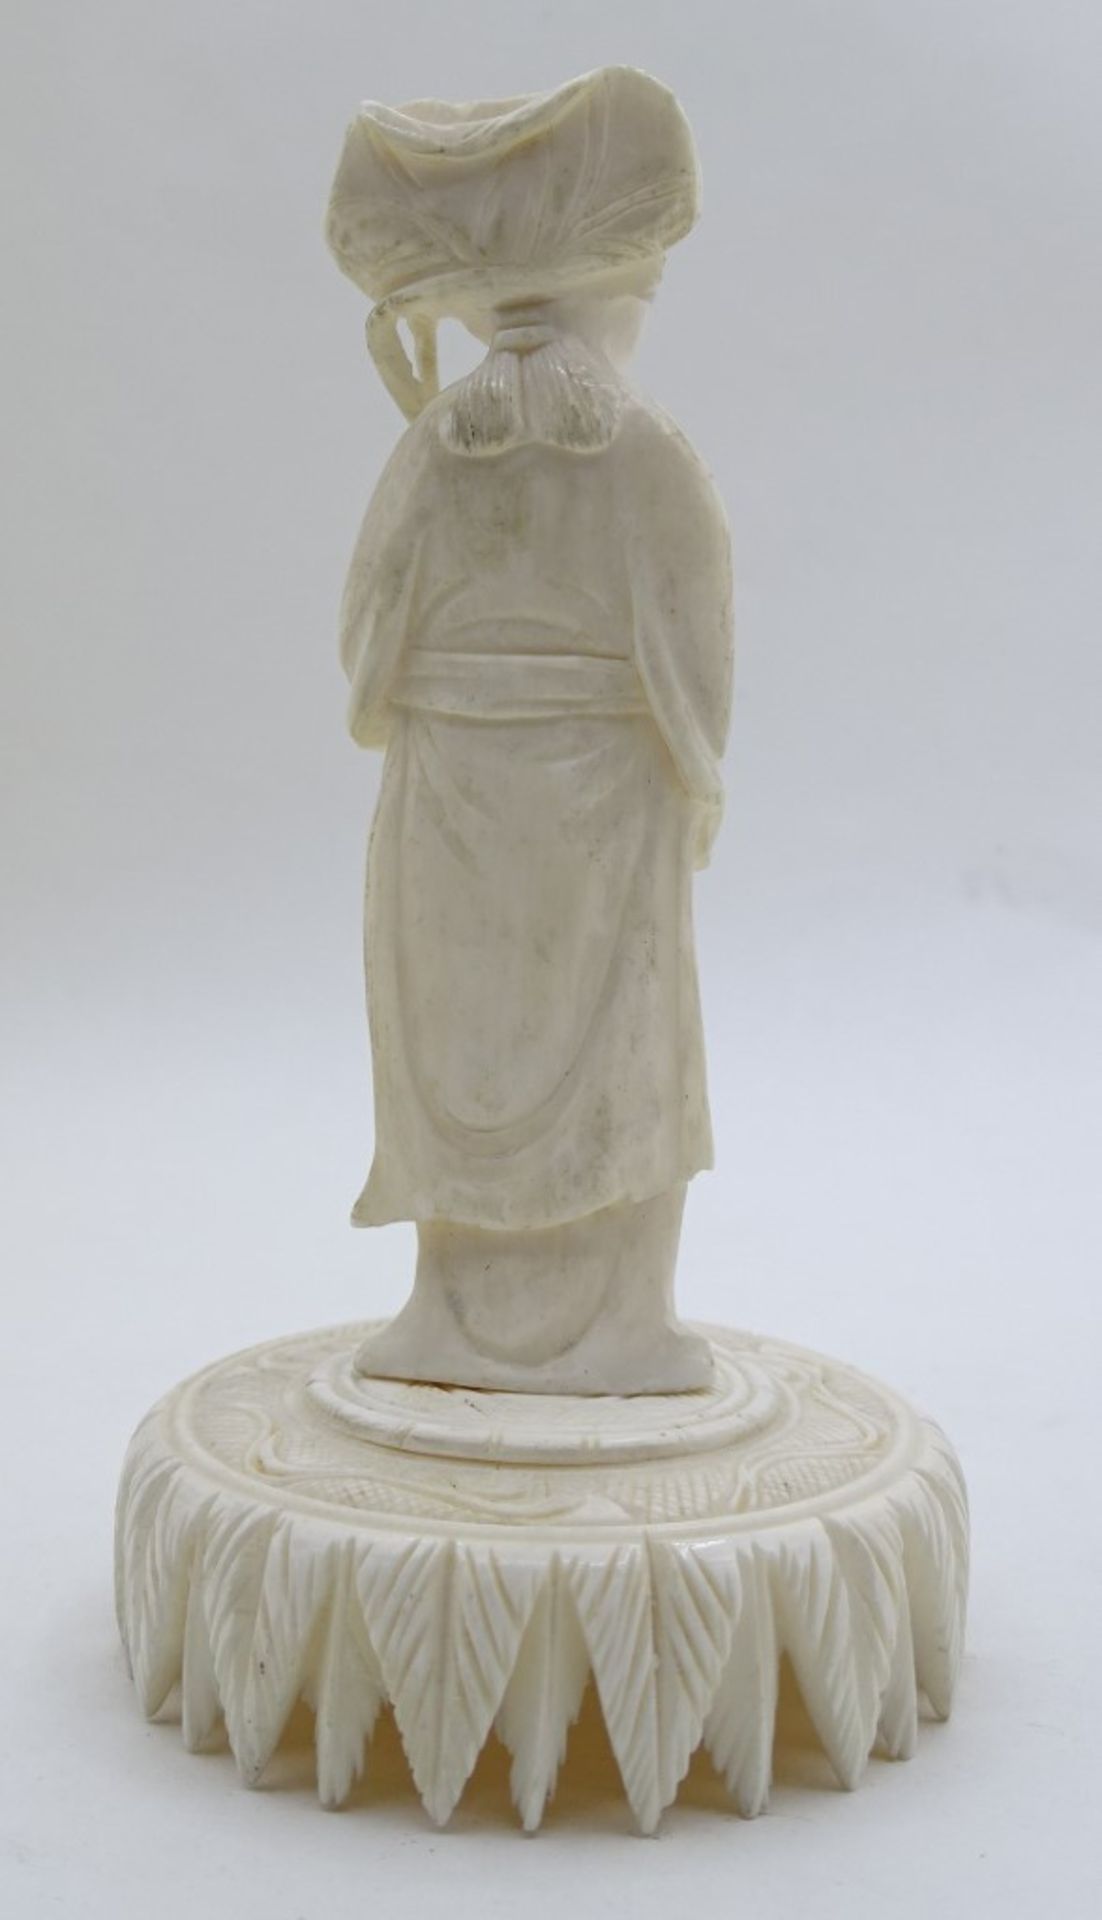 Geschnitzte Frauenfigur auf rundem Podest, Bei oder Beinimitat, China, H. 12,5 cm, mit Altersspuren - Bild 2 aus 4